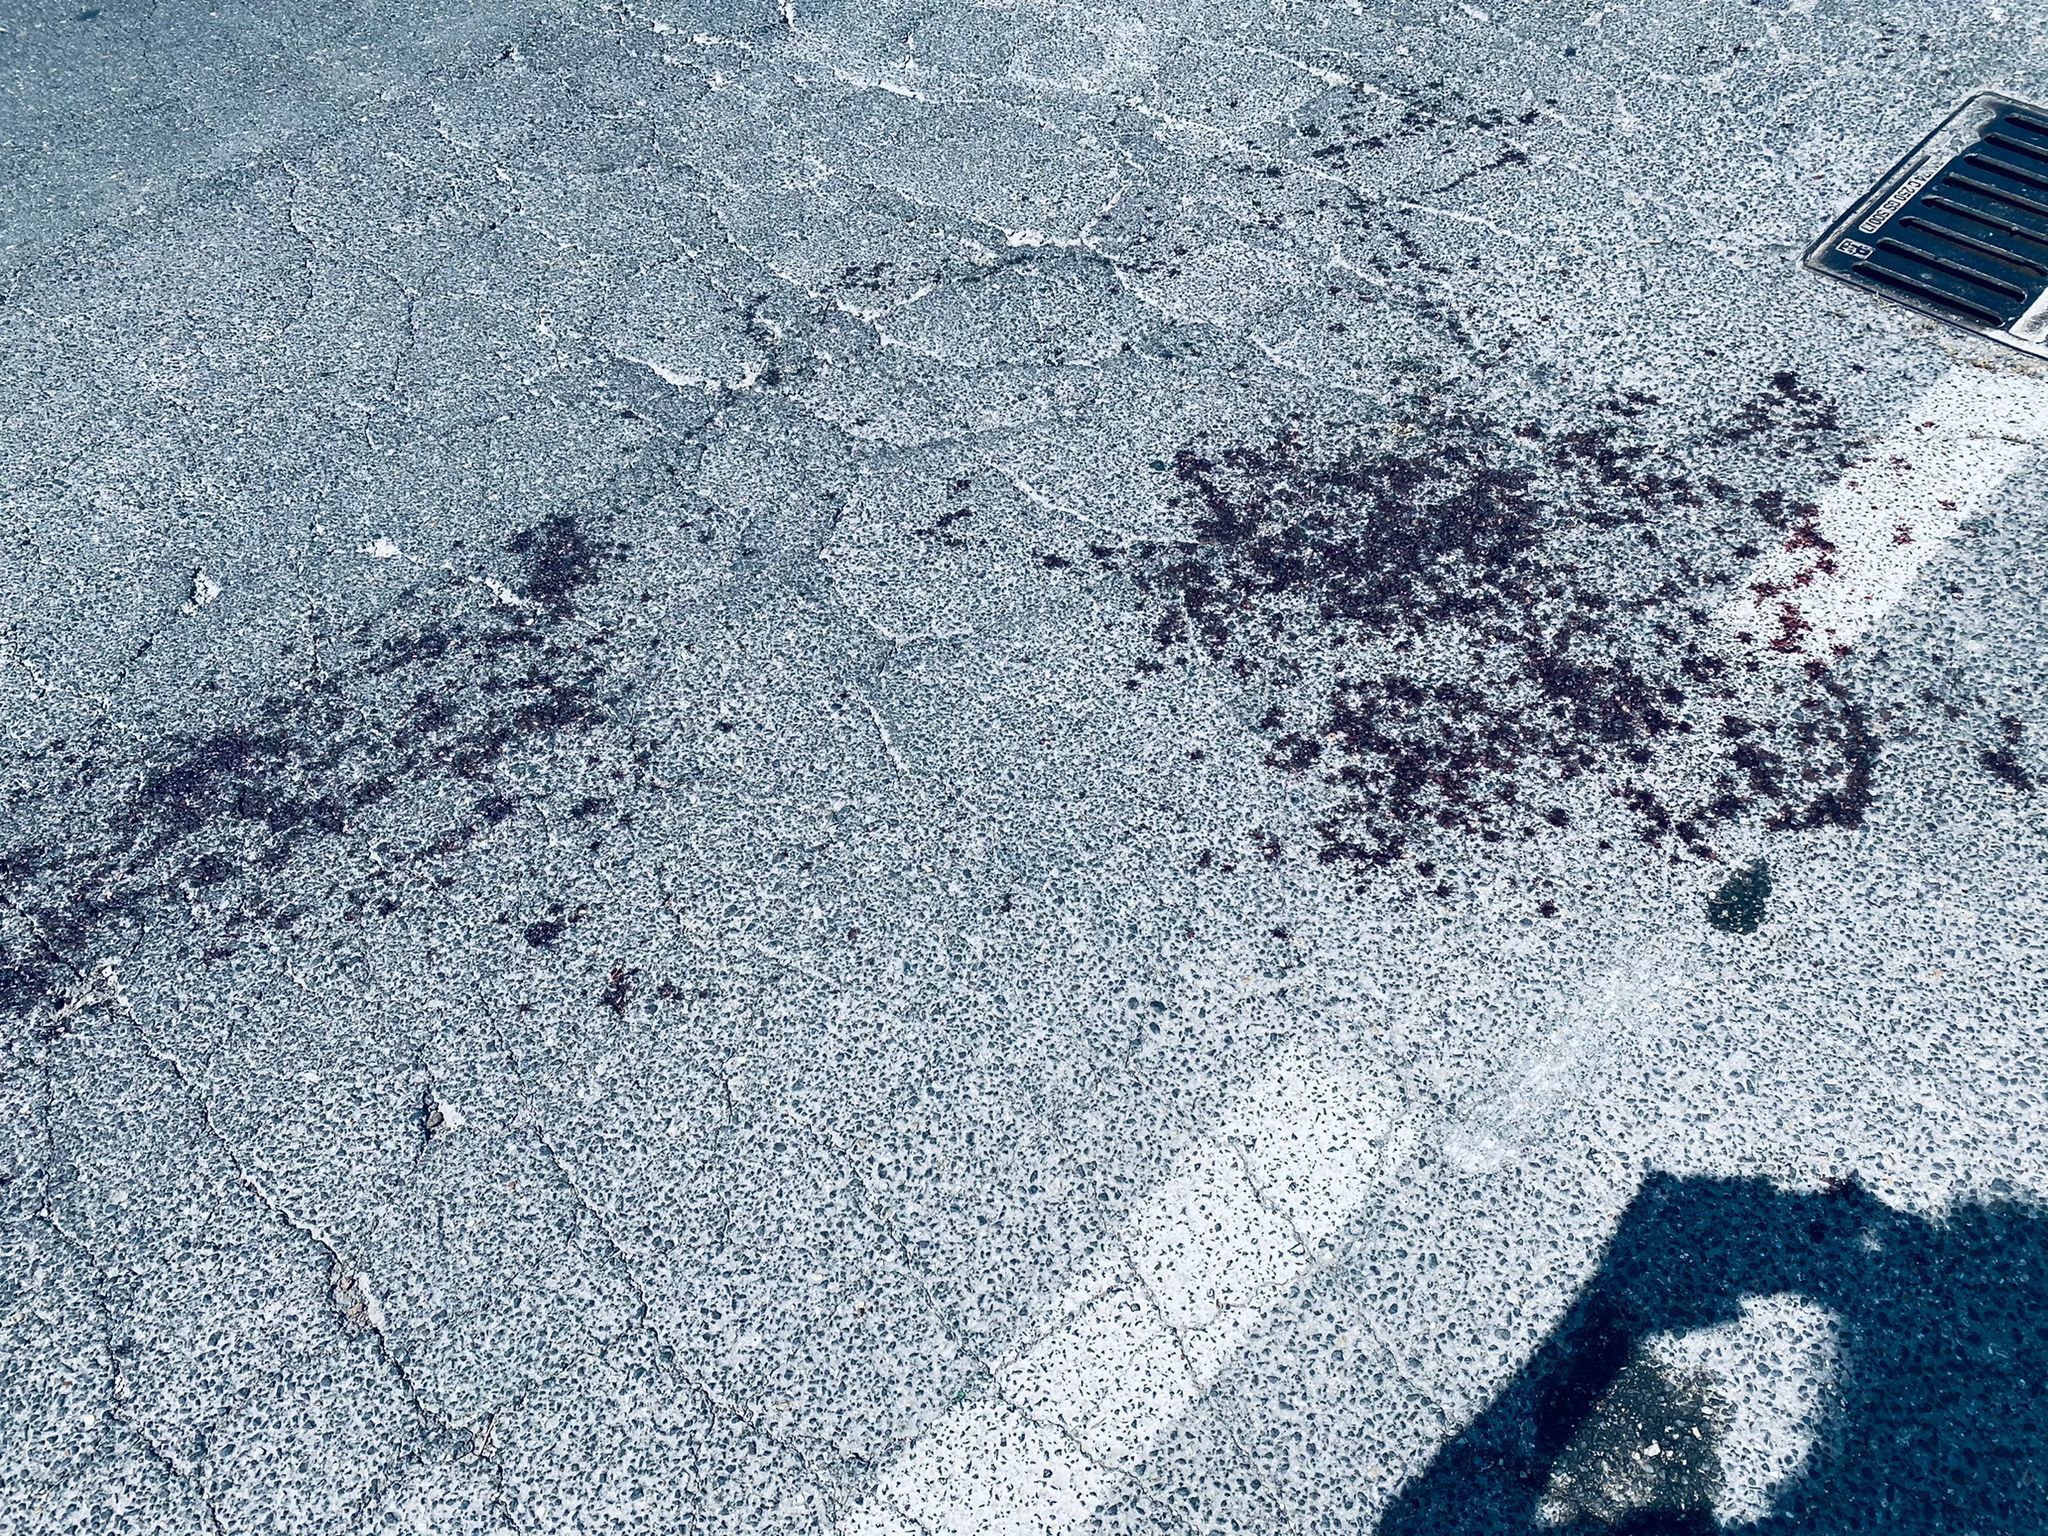 Sangue in strada a Torvaianica dopo il tentato omicidio a Campo Ascolano